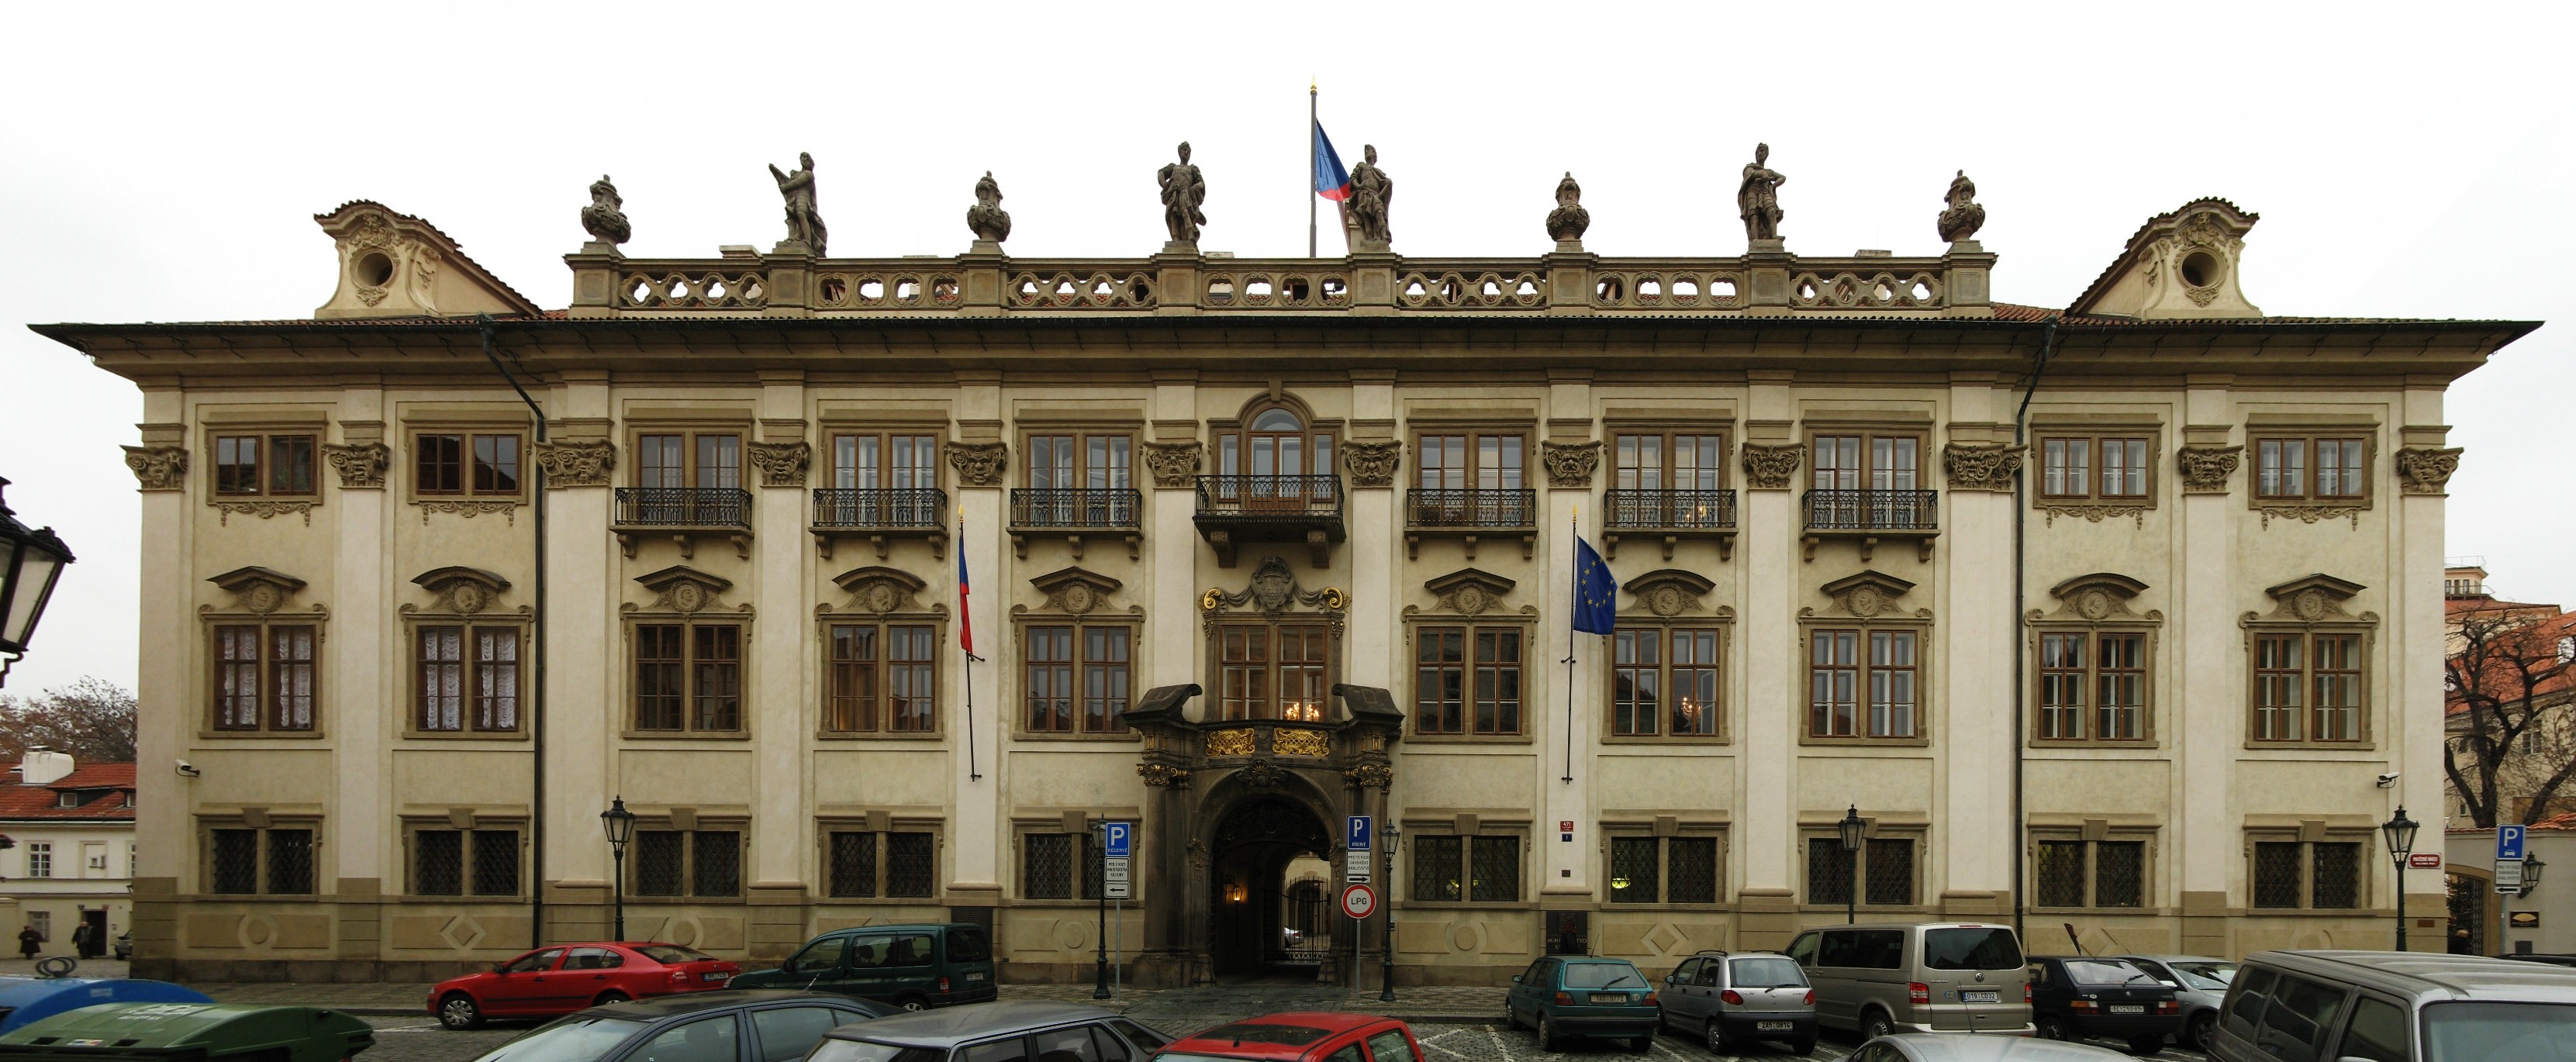 Nostický palác, Maltézské náměstí 1 v Praze na Malé Straně. Usídlilo se tam Ministerstvo kultury ČR